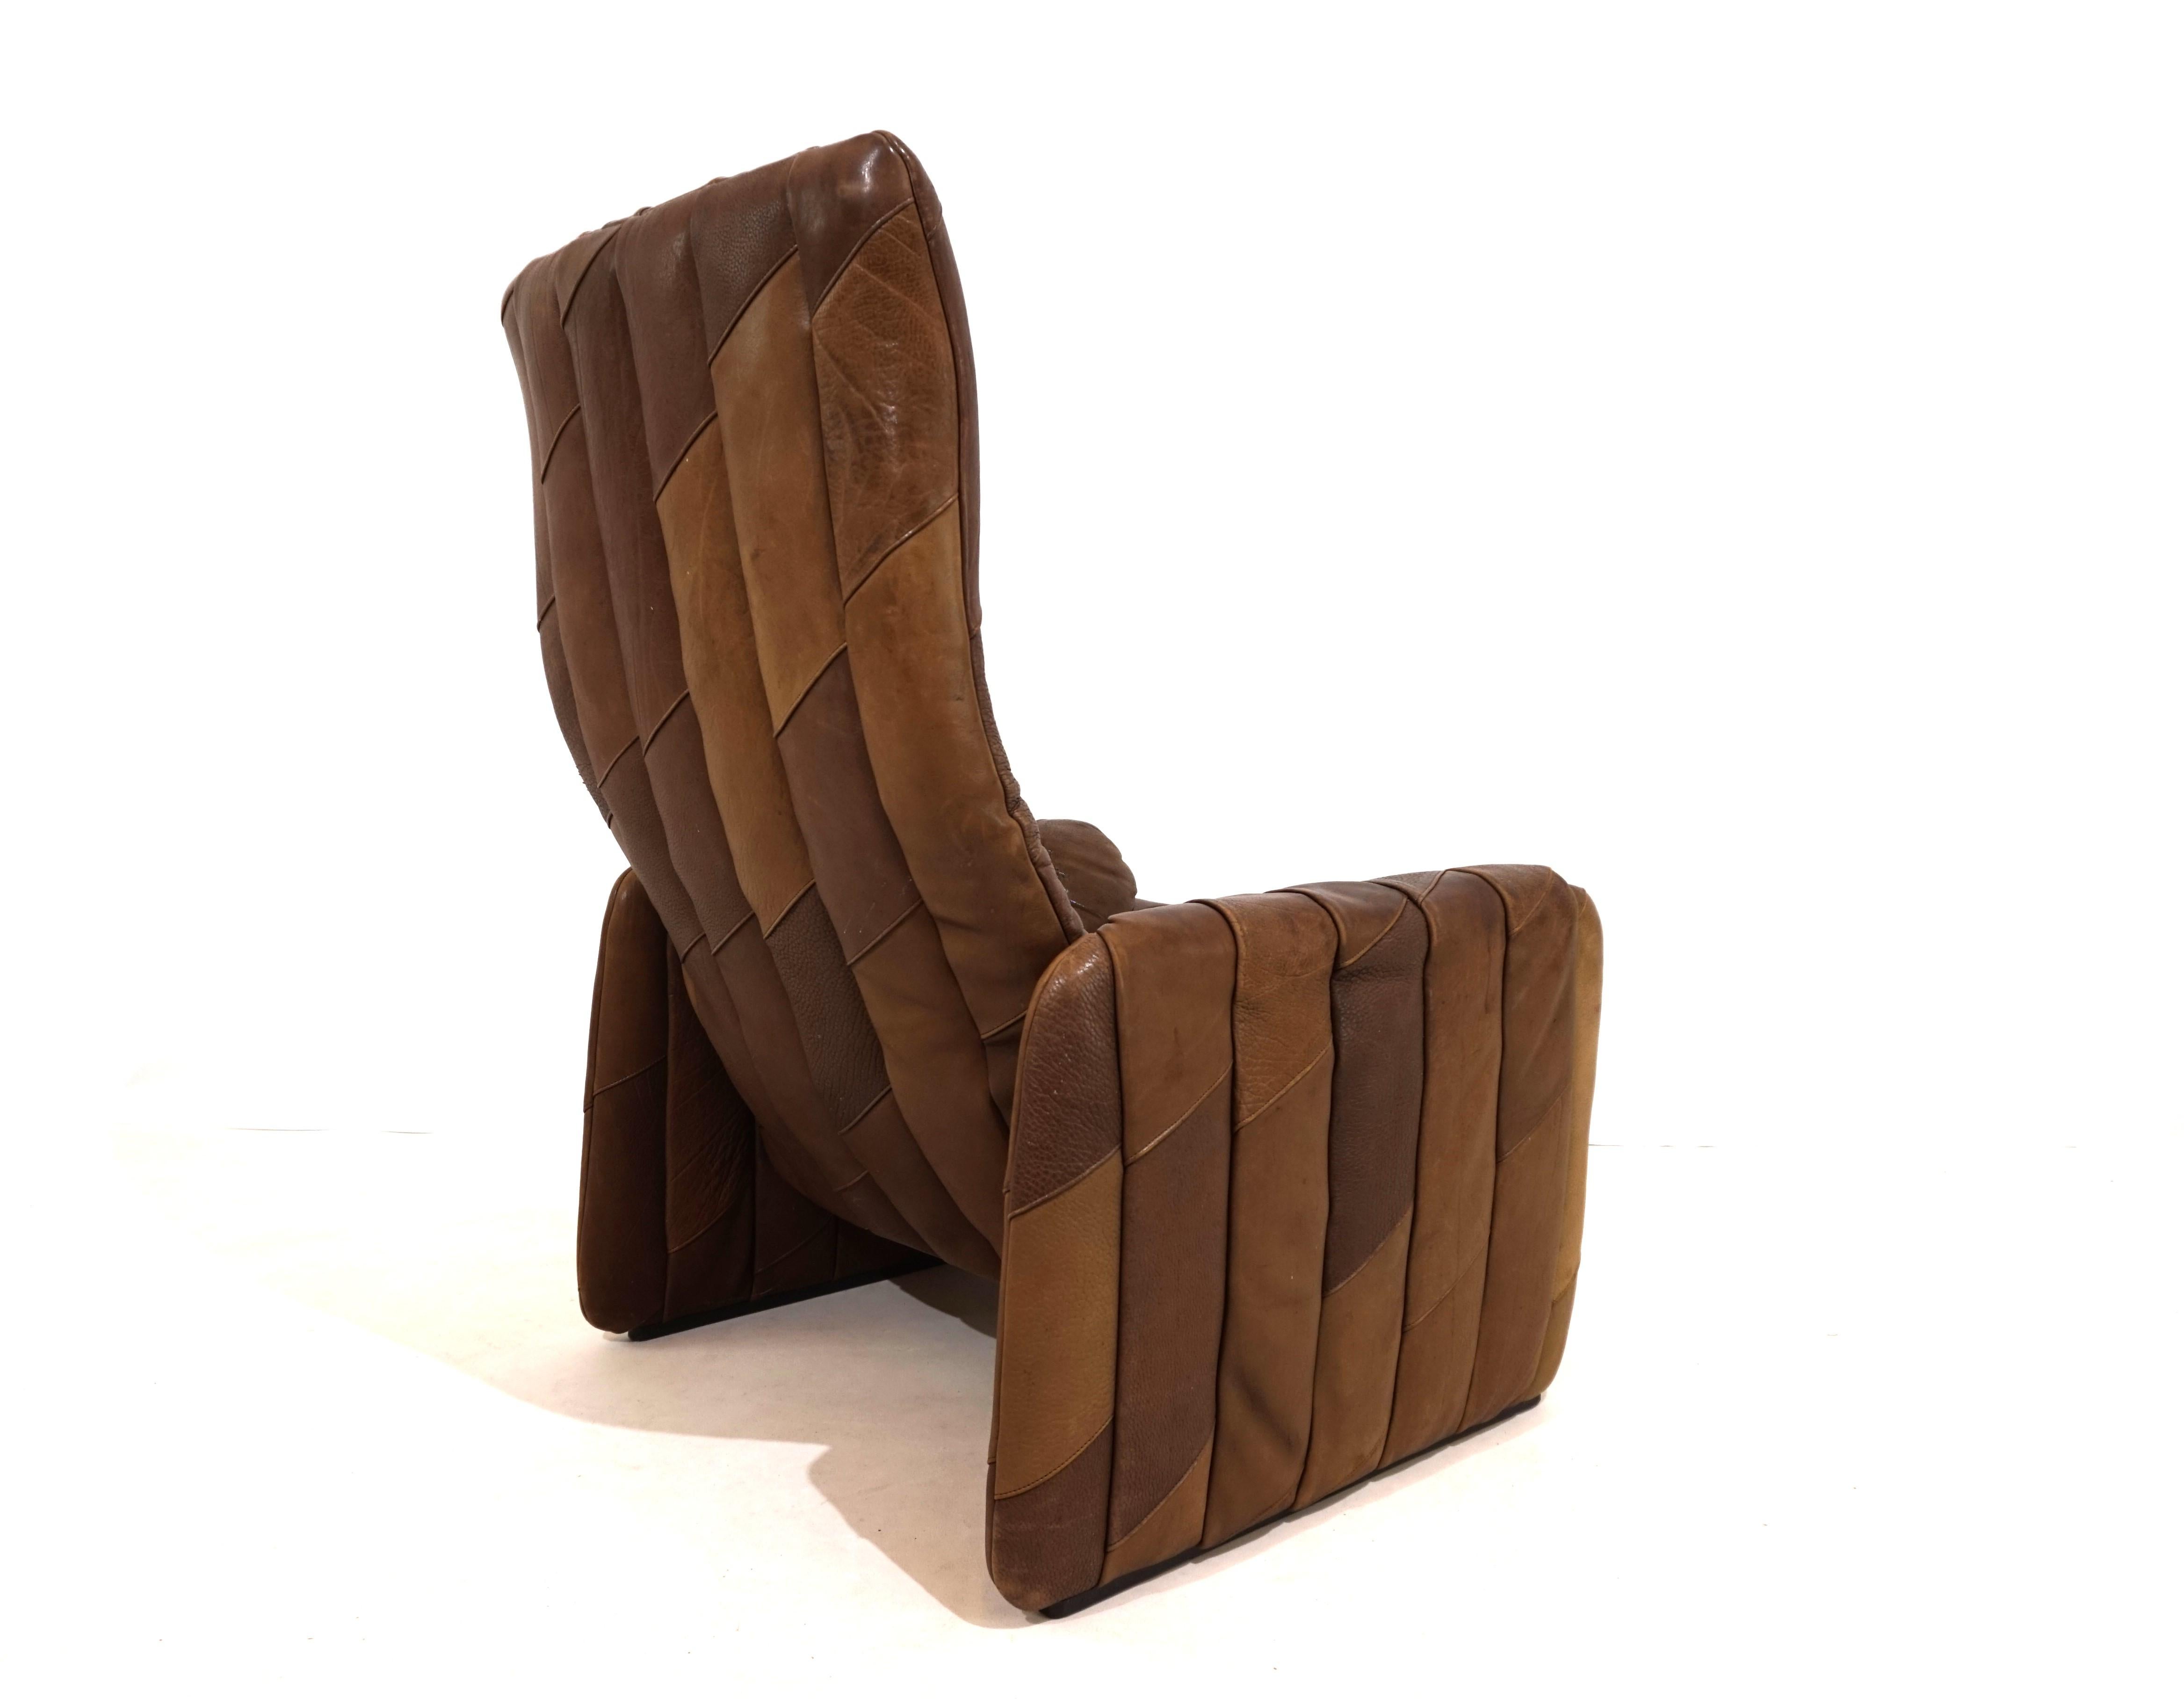 Ce fauteuil en cuir De Sede DS 50 Patchwork est en très bon état. Le cuir de buffle brun, épais et fin à la fois, présente une belle patine et des signes d'usure minimes. Le jeu de lumière dans les différentes nuances de brun du fauteuil lui confère